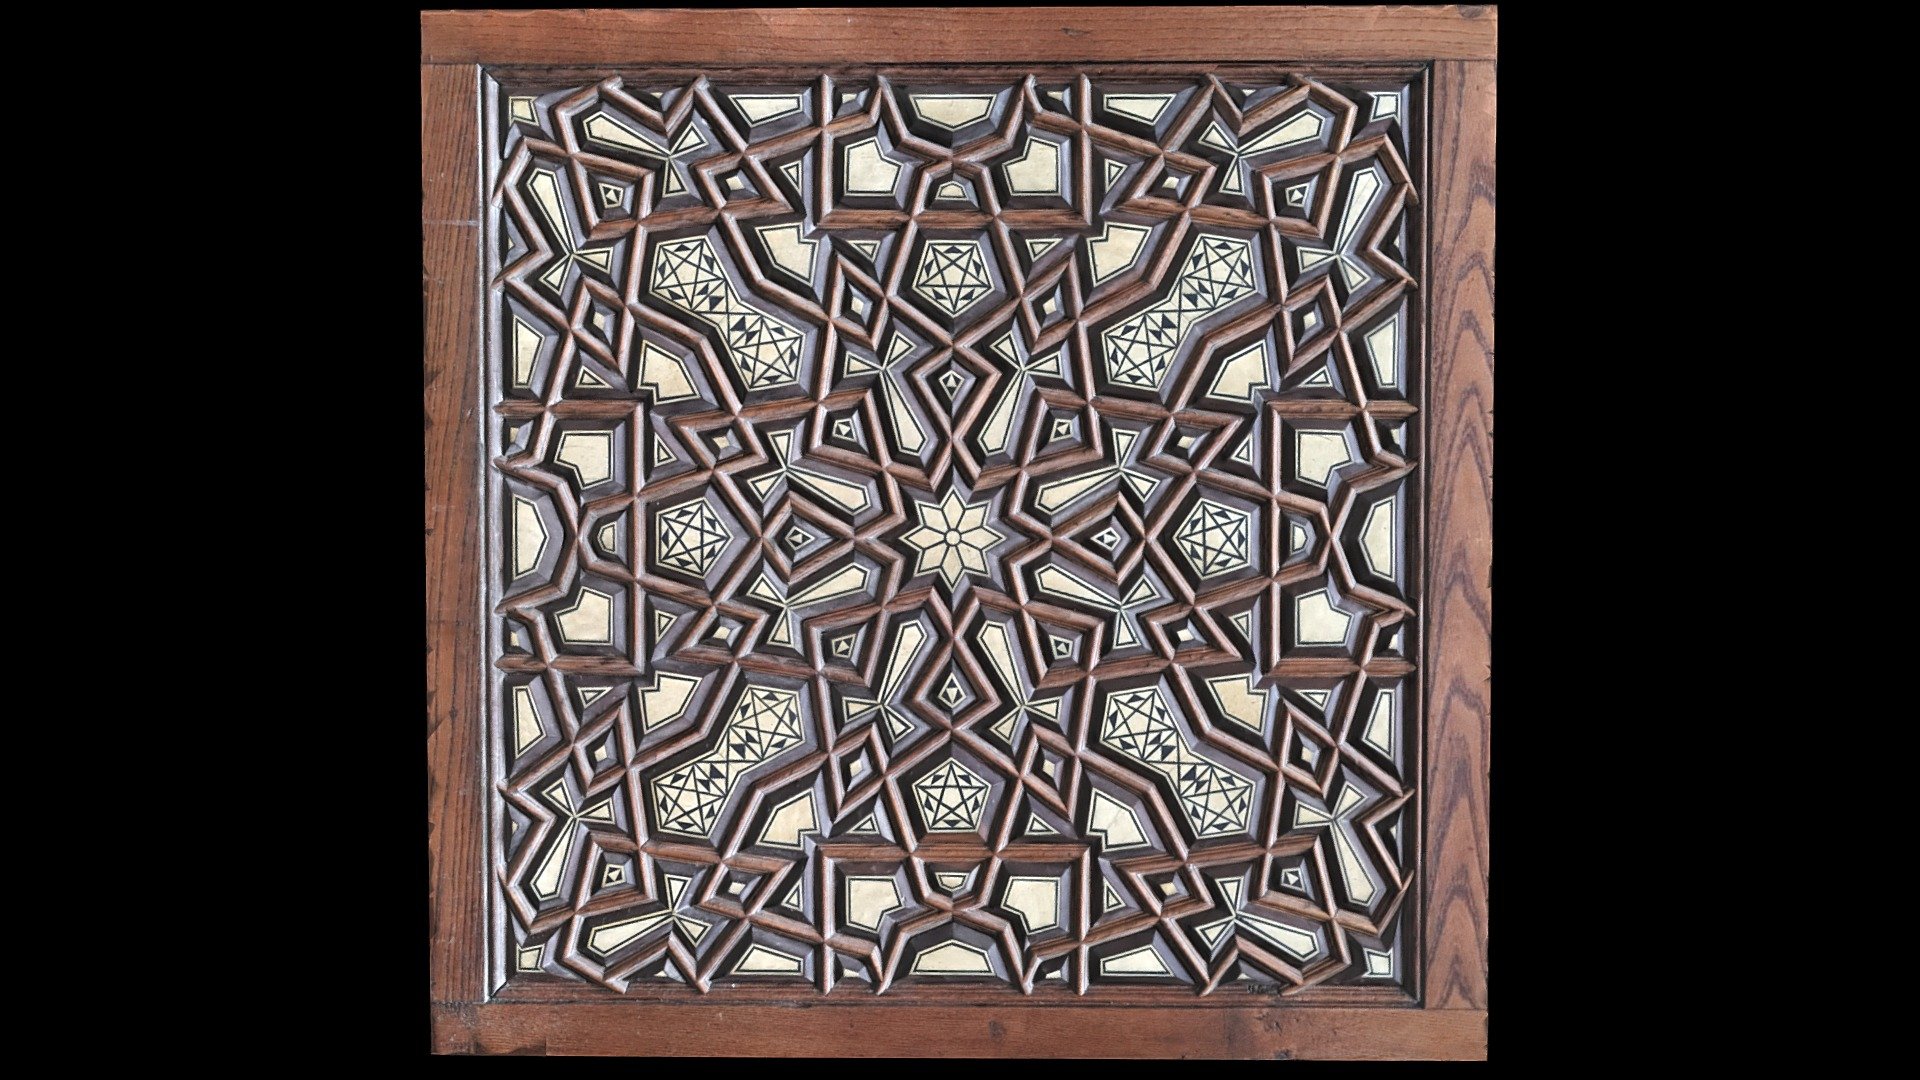 Islamic Geometric Motif on Wooden Door Panel - 3D model by danderson4 ...